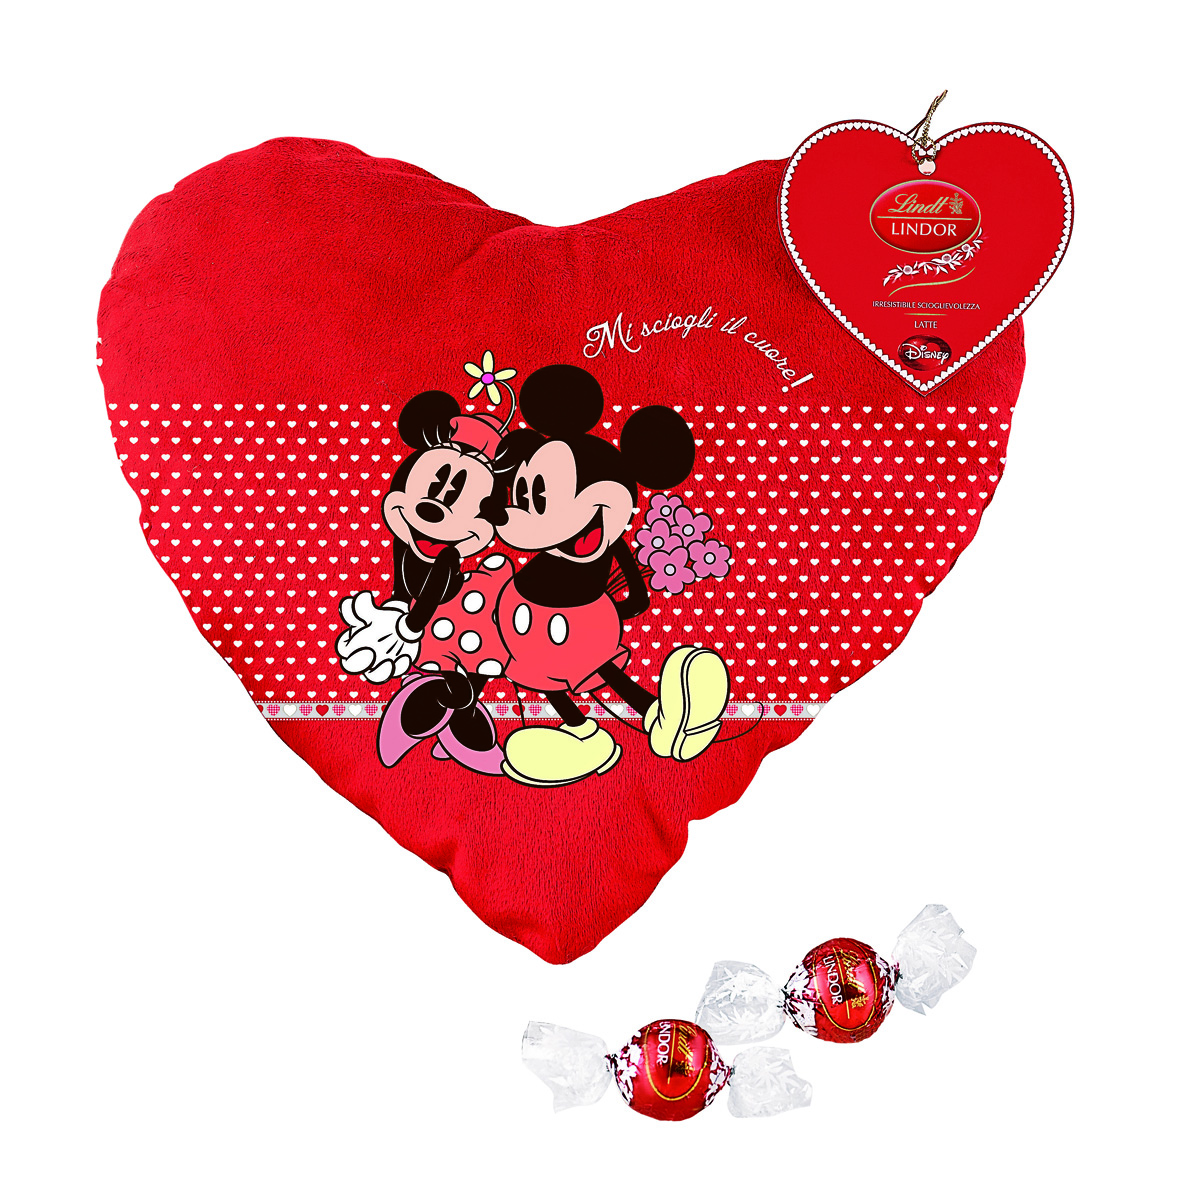 Le idee regalo Disney per San Valentino 2014 golose e fashion